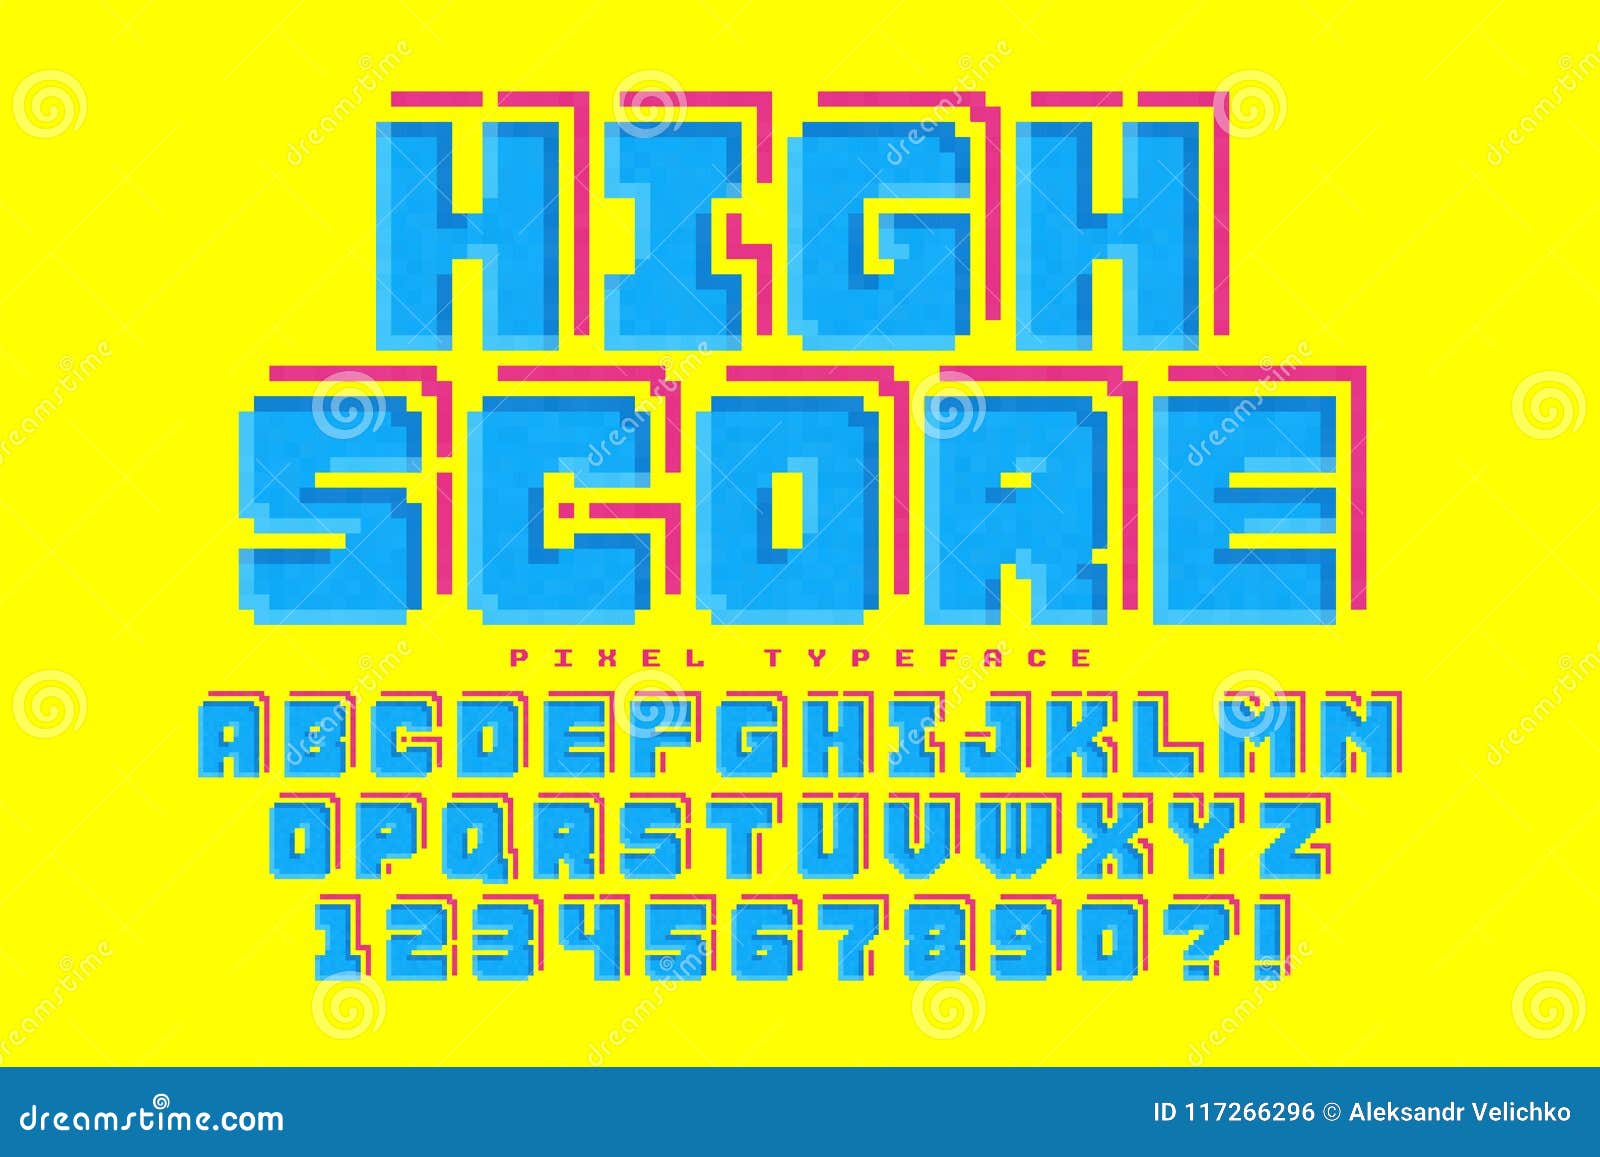 pixel  font , stylized like in 8-bit games